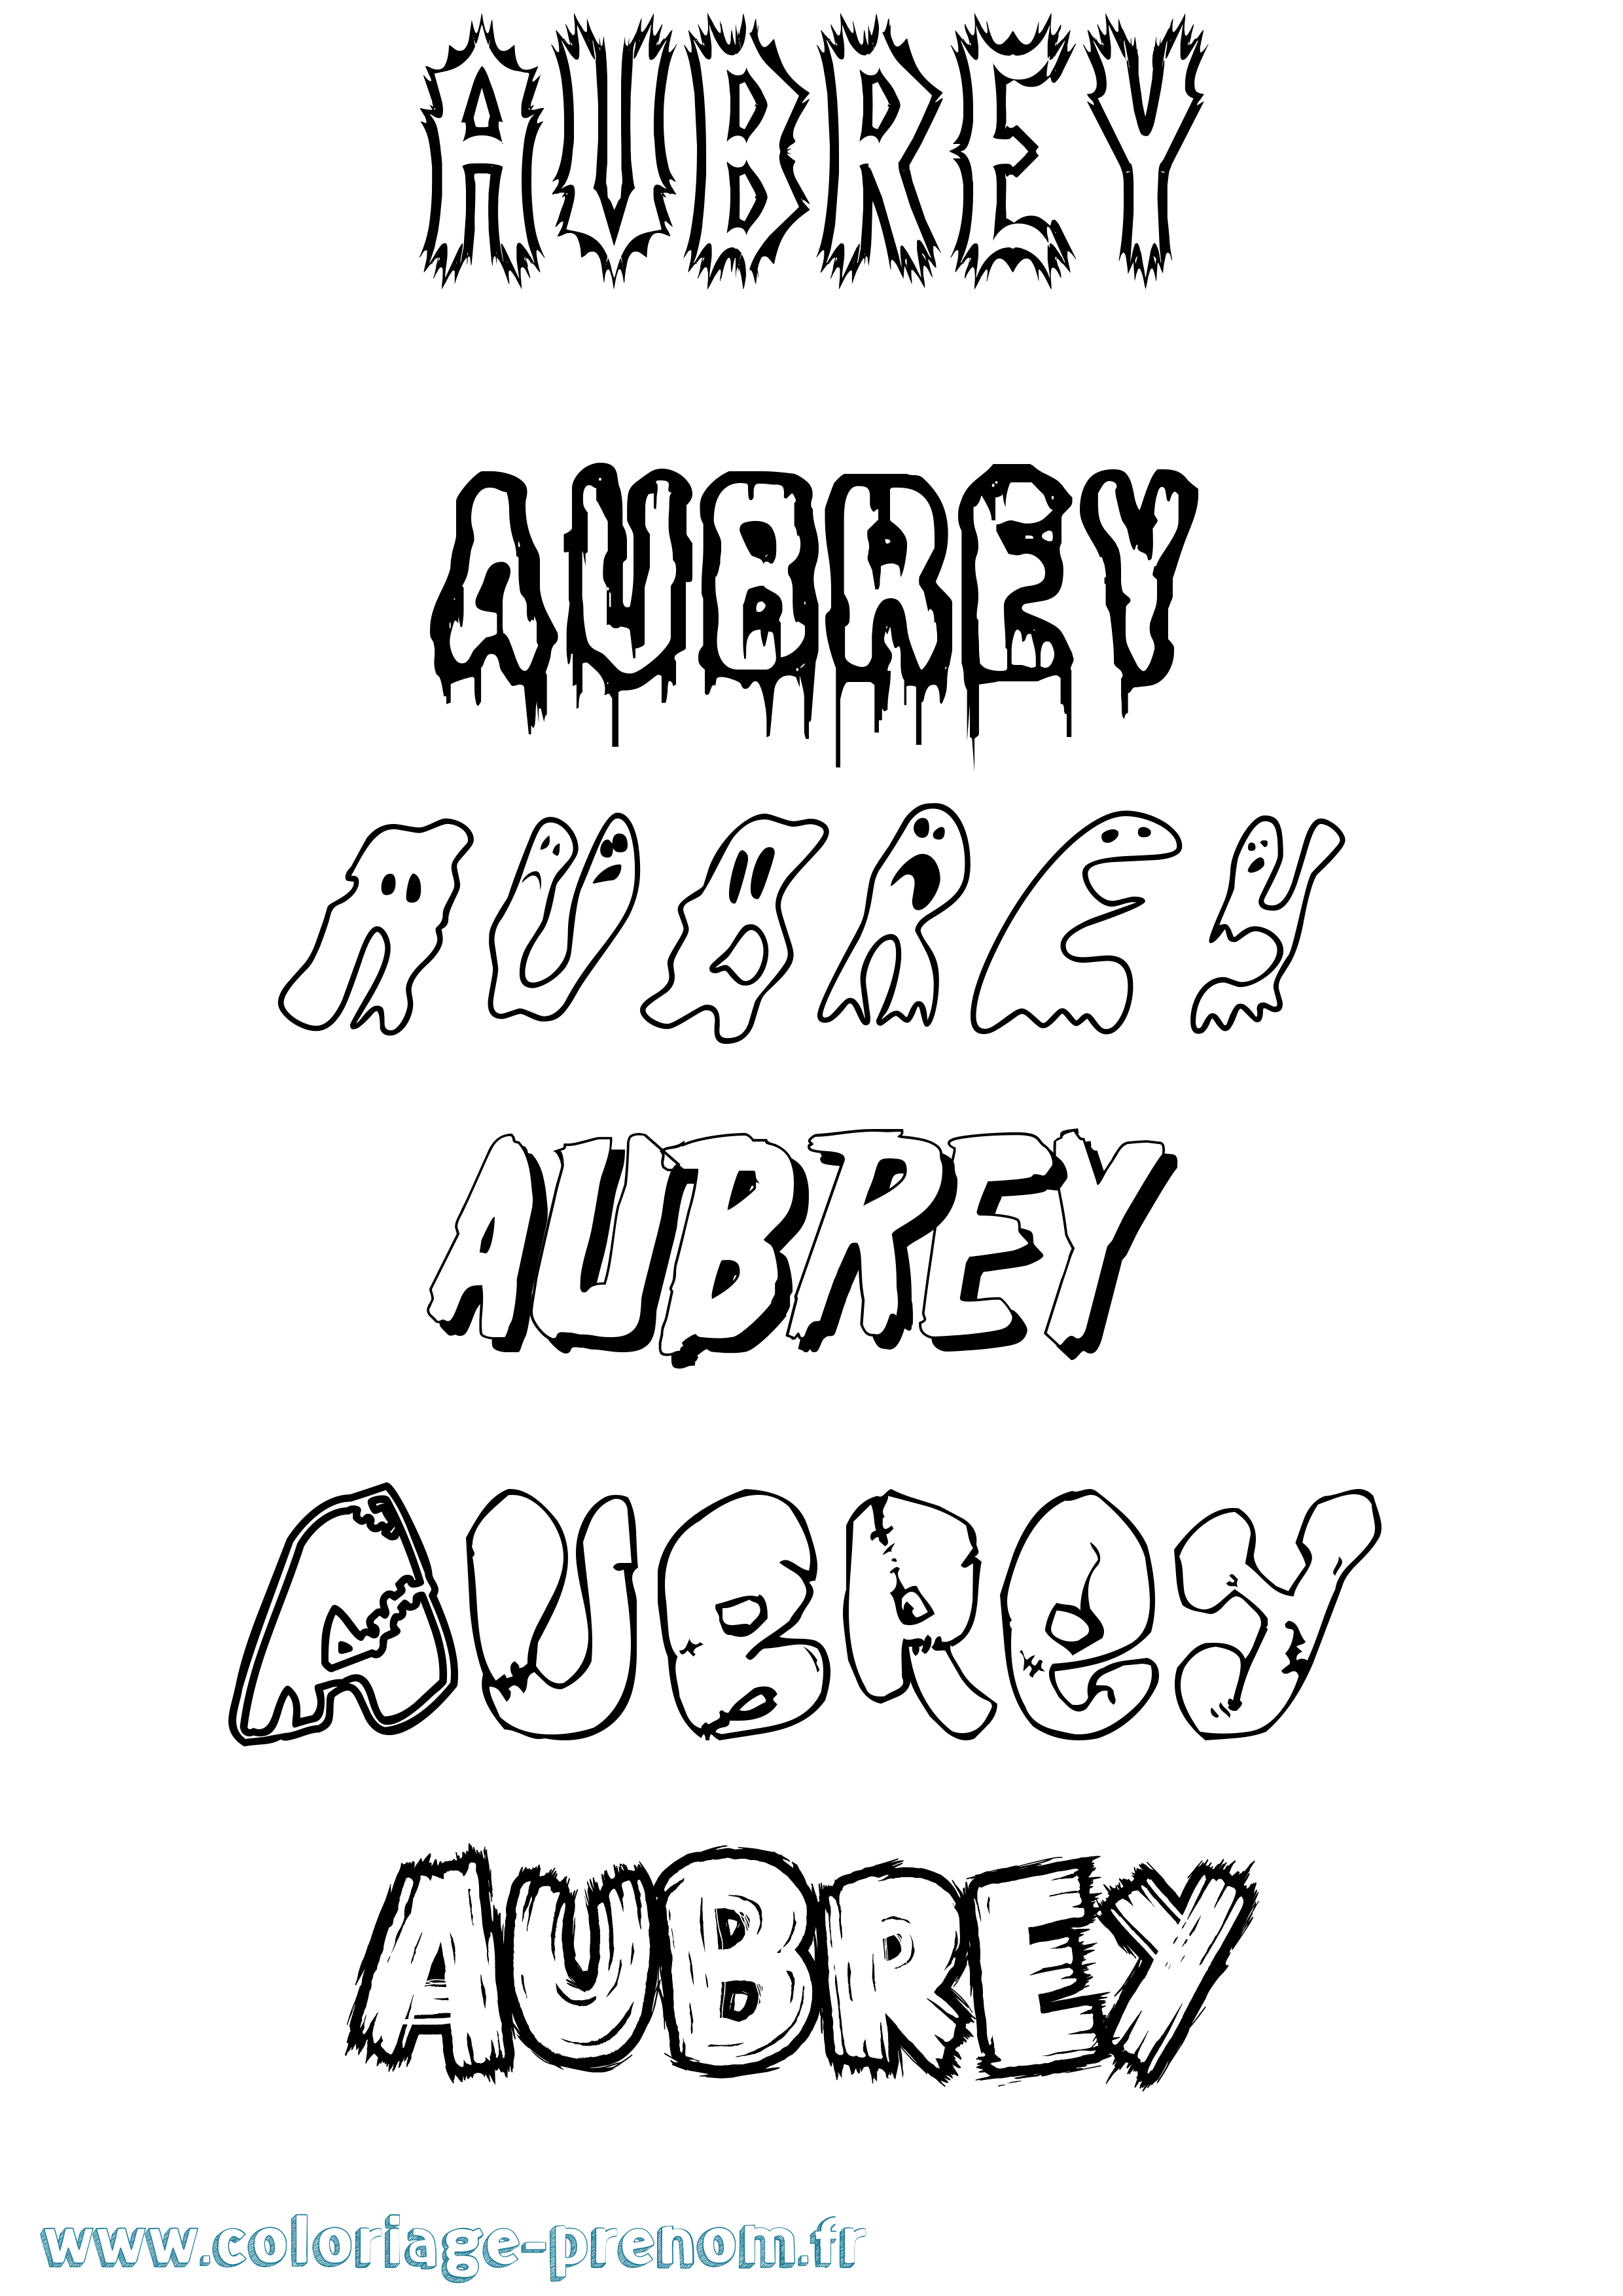 Coloriage prénom Aubrey Frisson